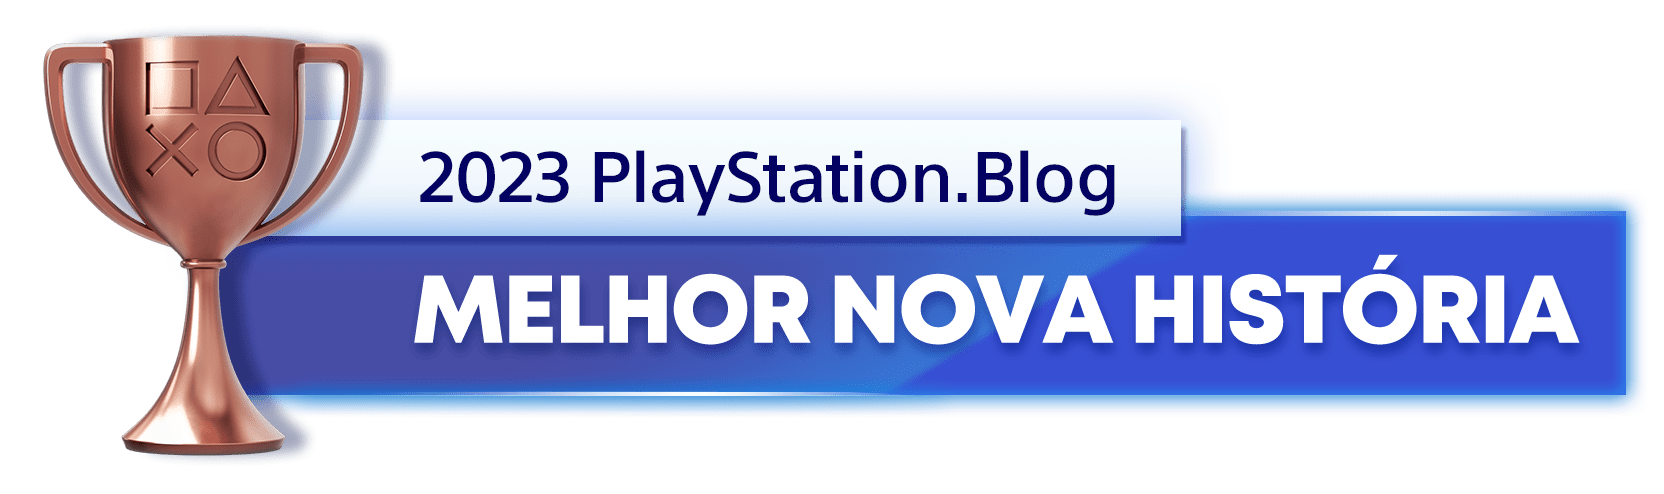 Troféu de Bronze para o vencedor da categoria Melhor Nova História de 2023 do Blog PlayStation